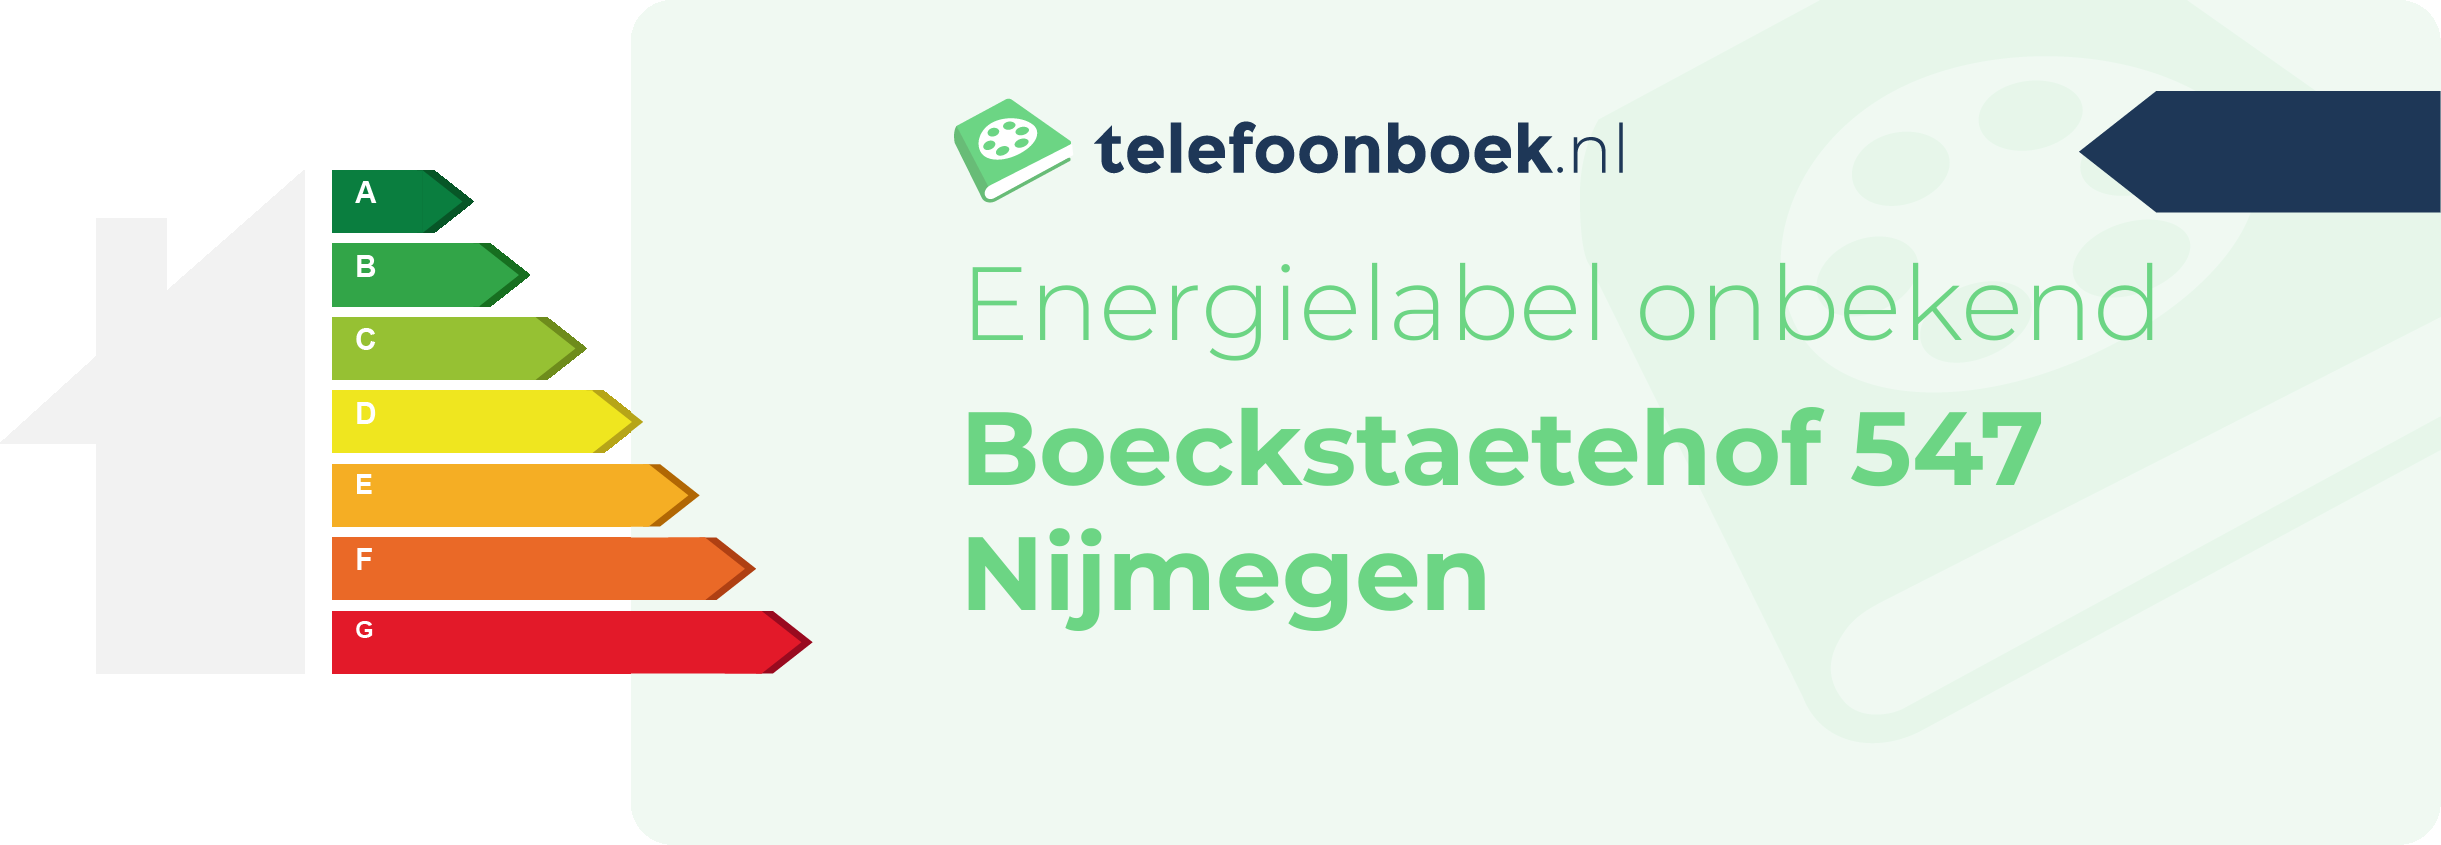 Energielabel Boeckstaetehof 547 Nijmegen